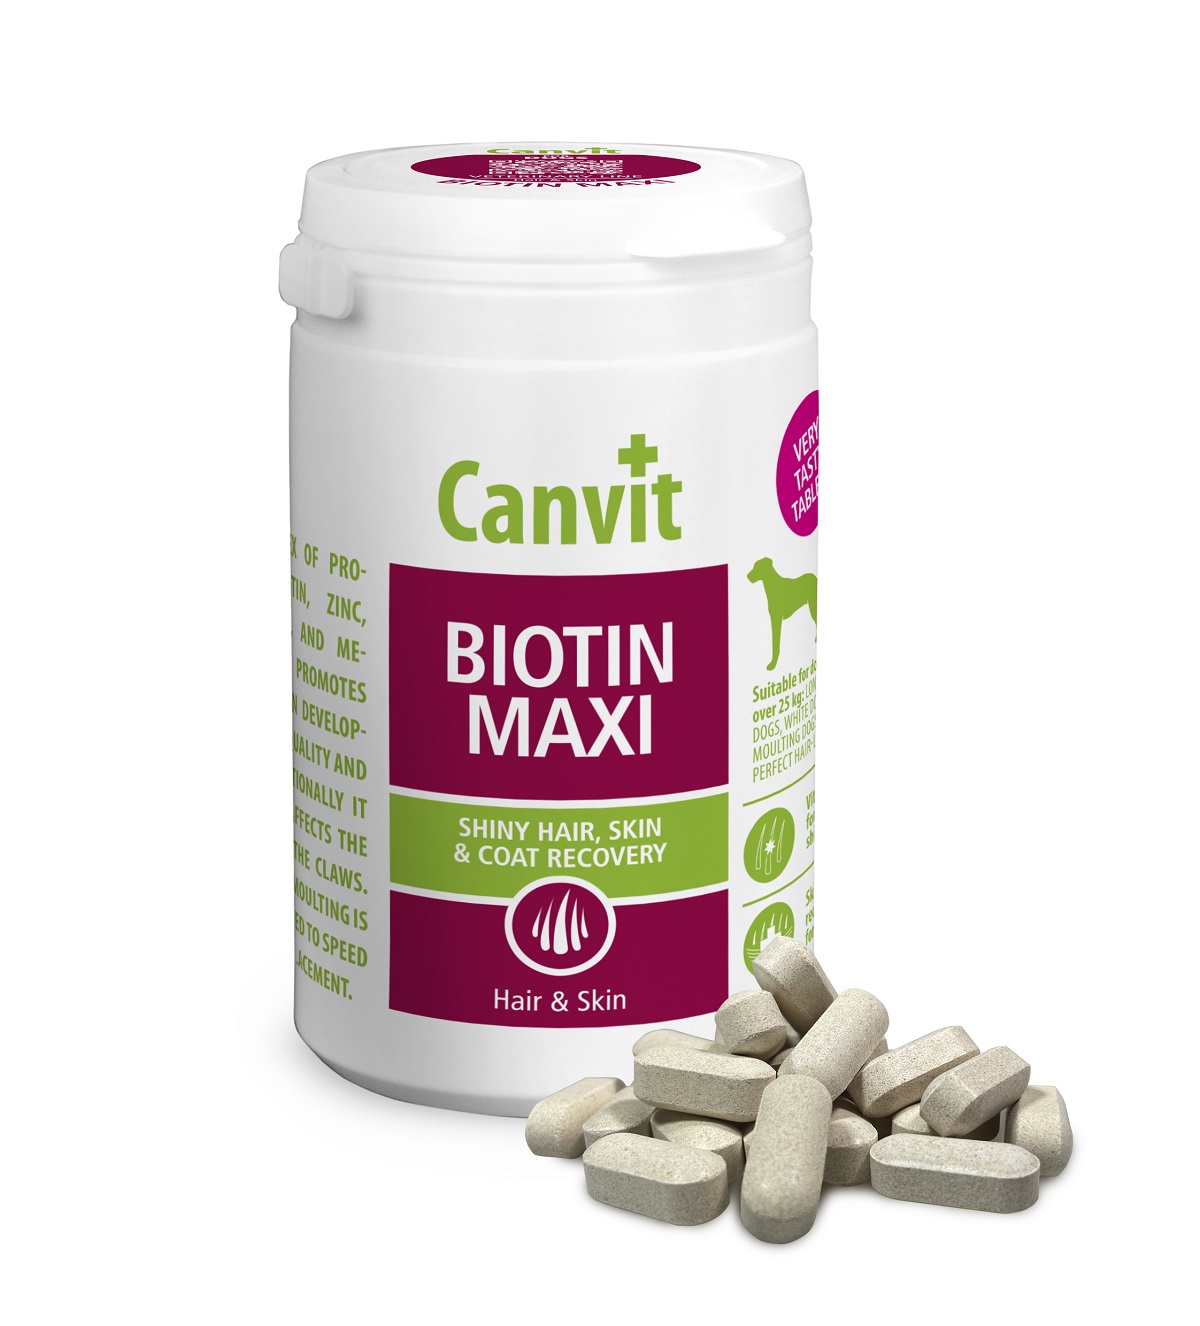 CANVIT Biotin Maxi pro psy tbl 230g